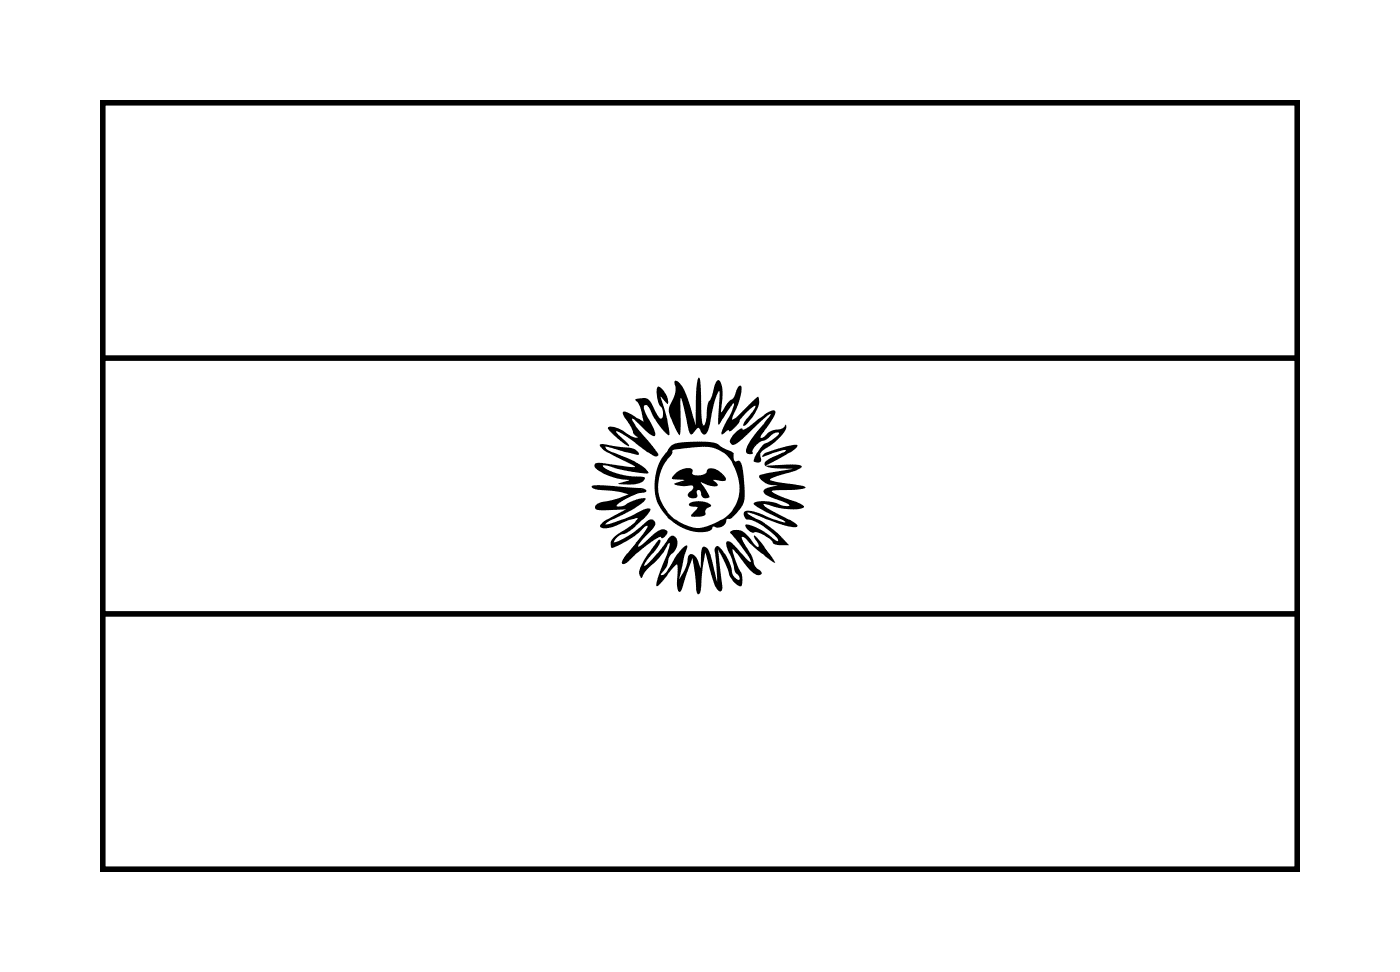  علم أرجنجنيني 